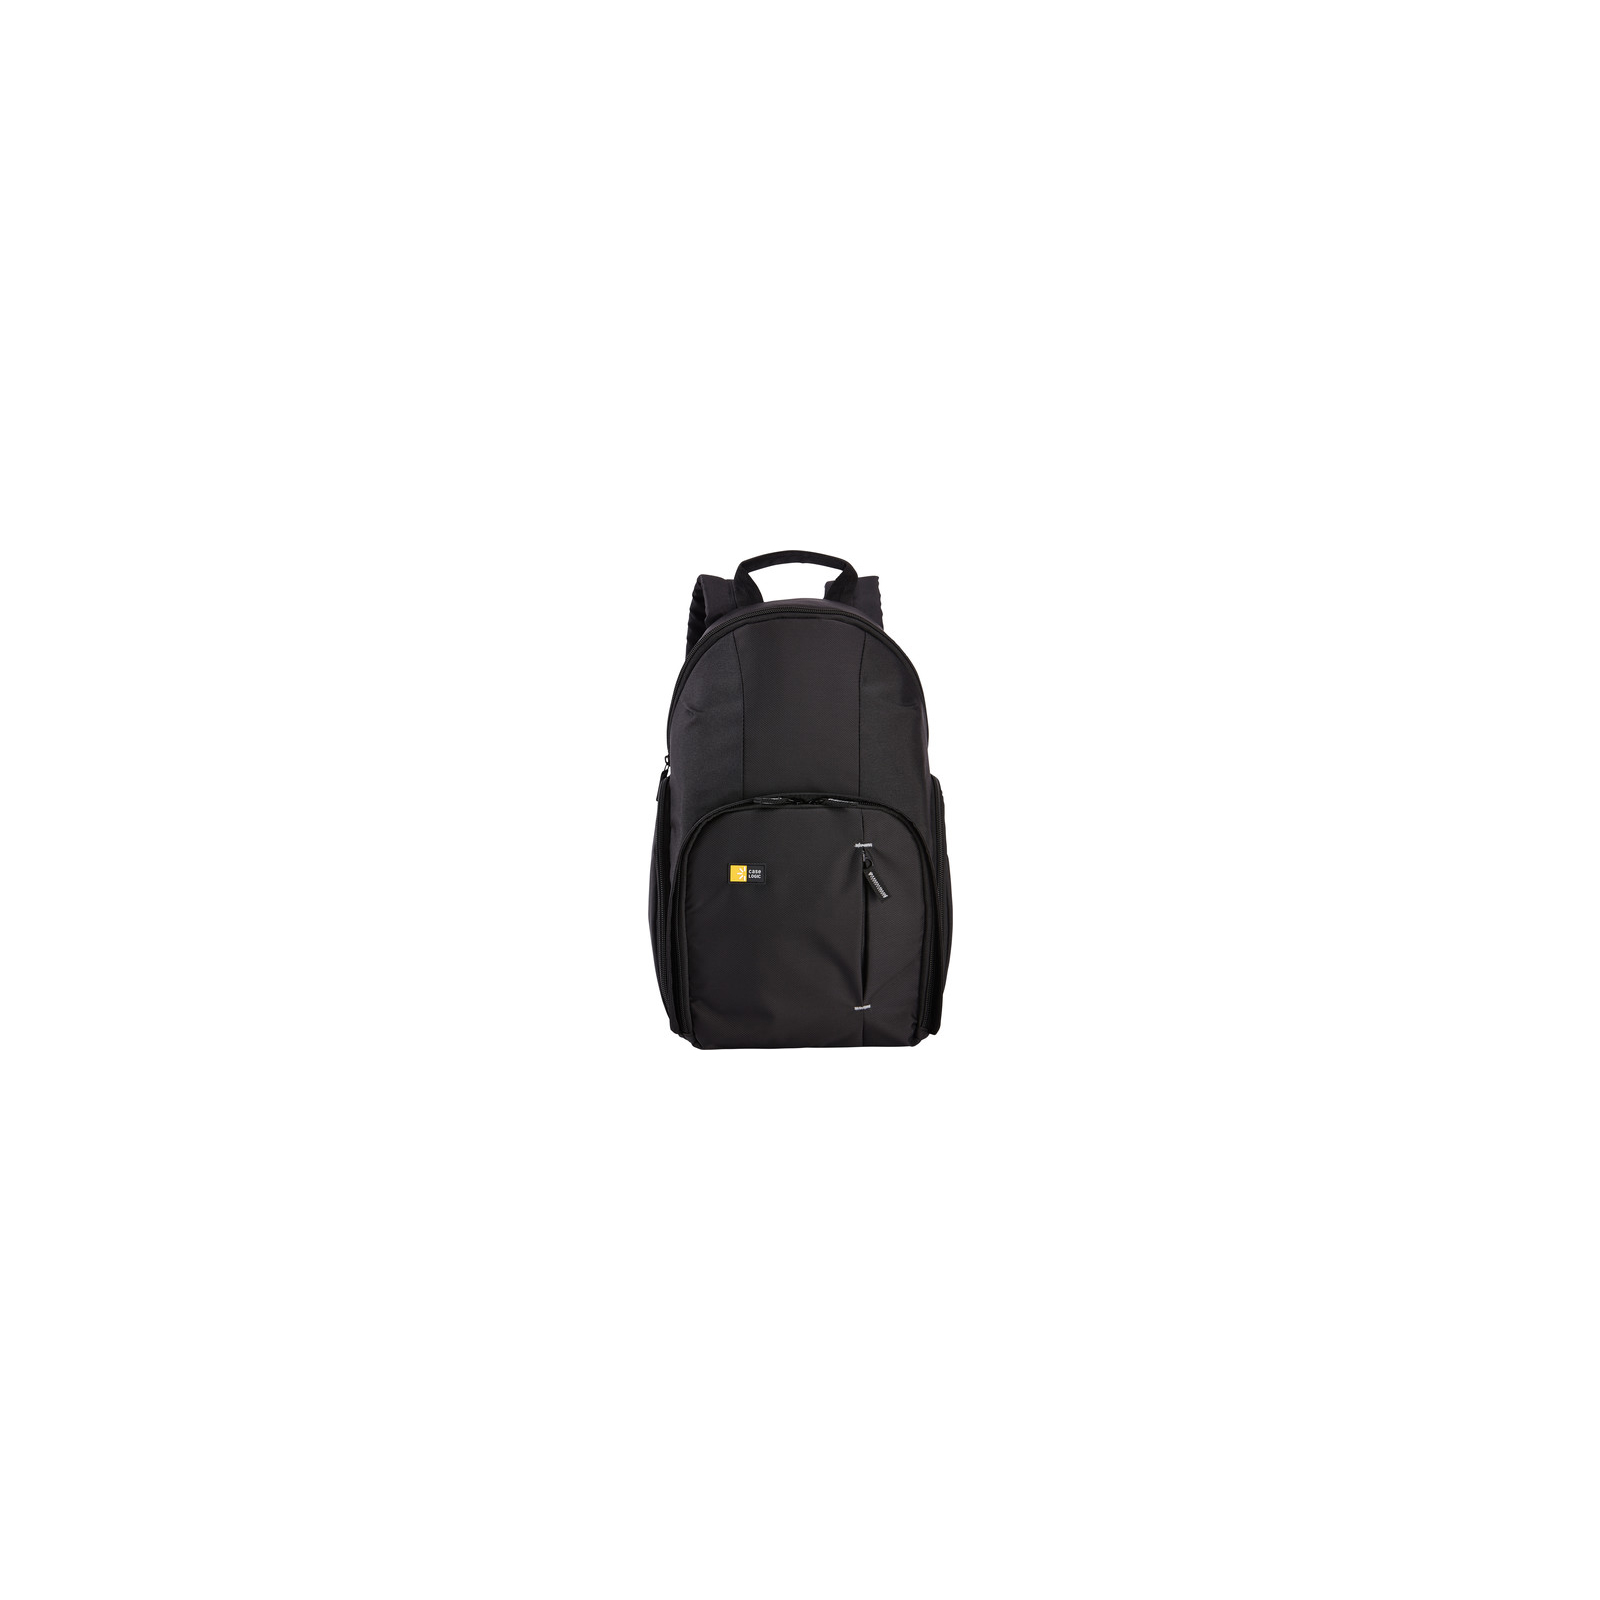 Фото-сумка Case Logic TBC-411 Backpack Black (3201946) изображение 2